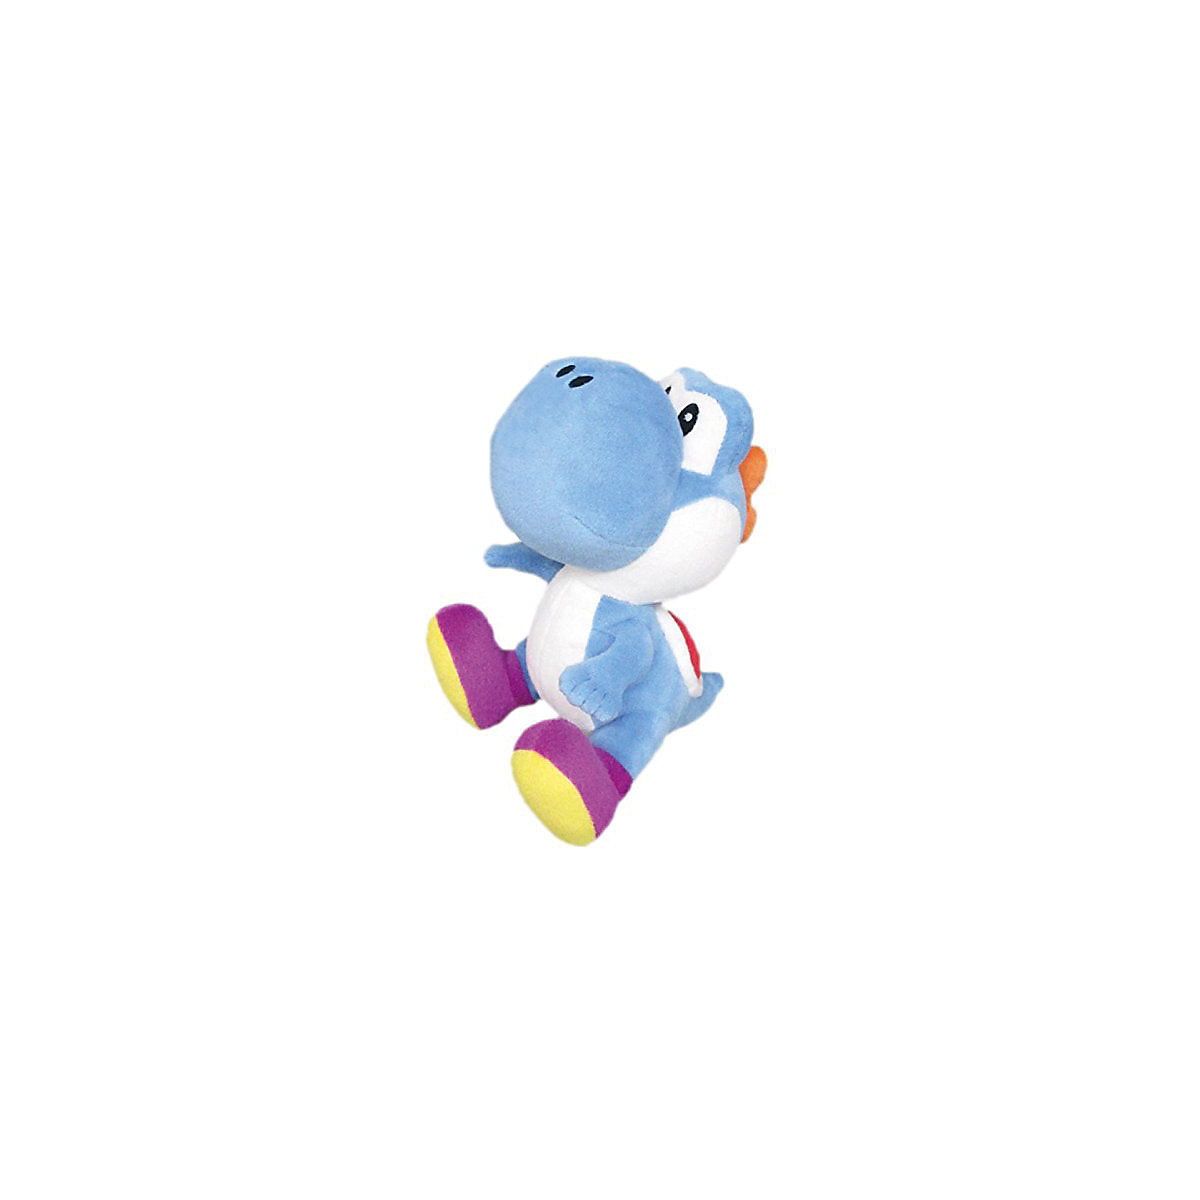 Plüsch Nintendo Yoshi 17 cm blau